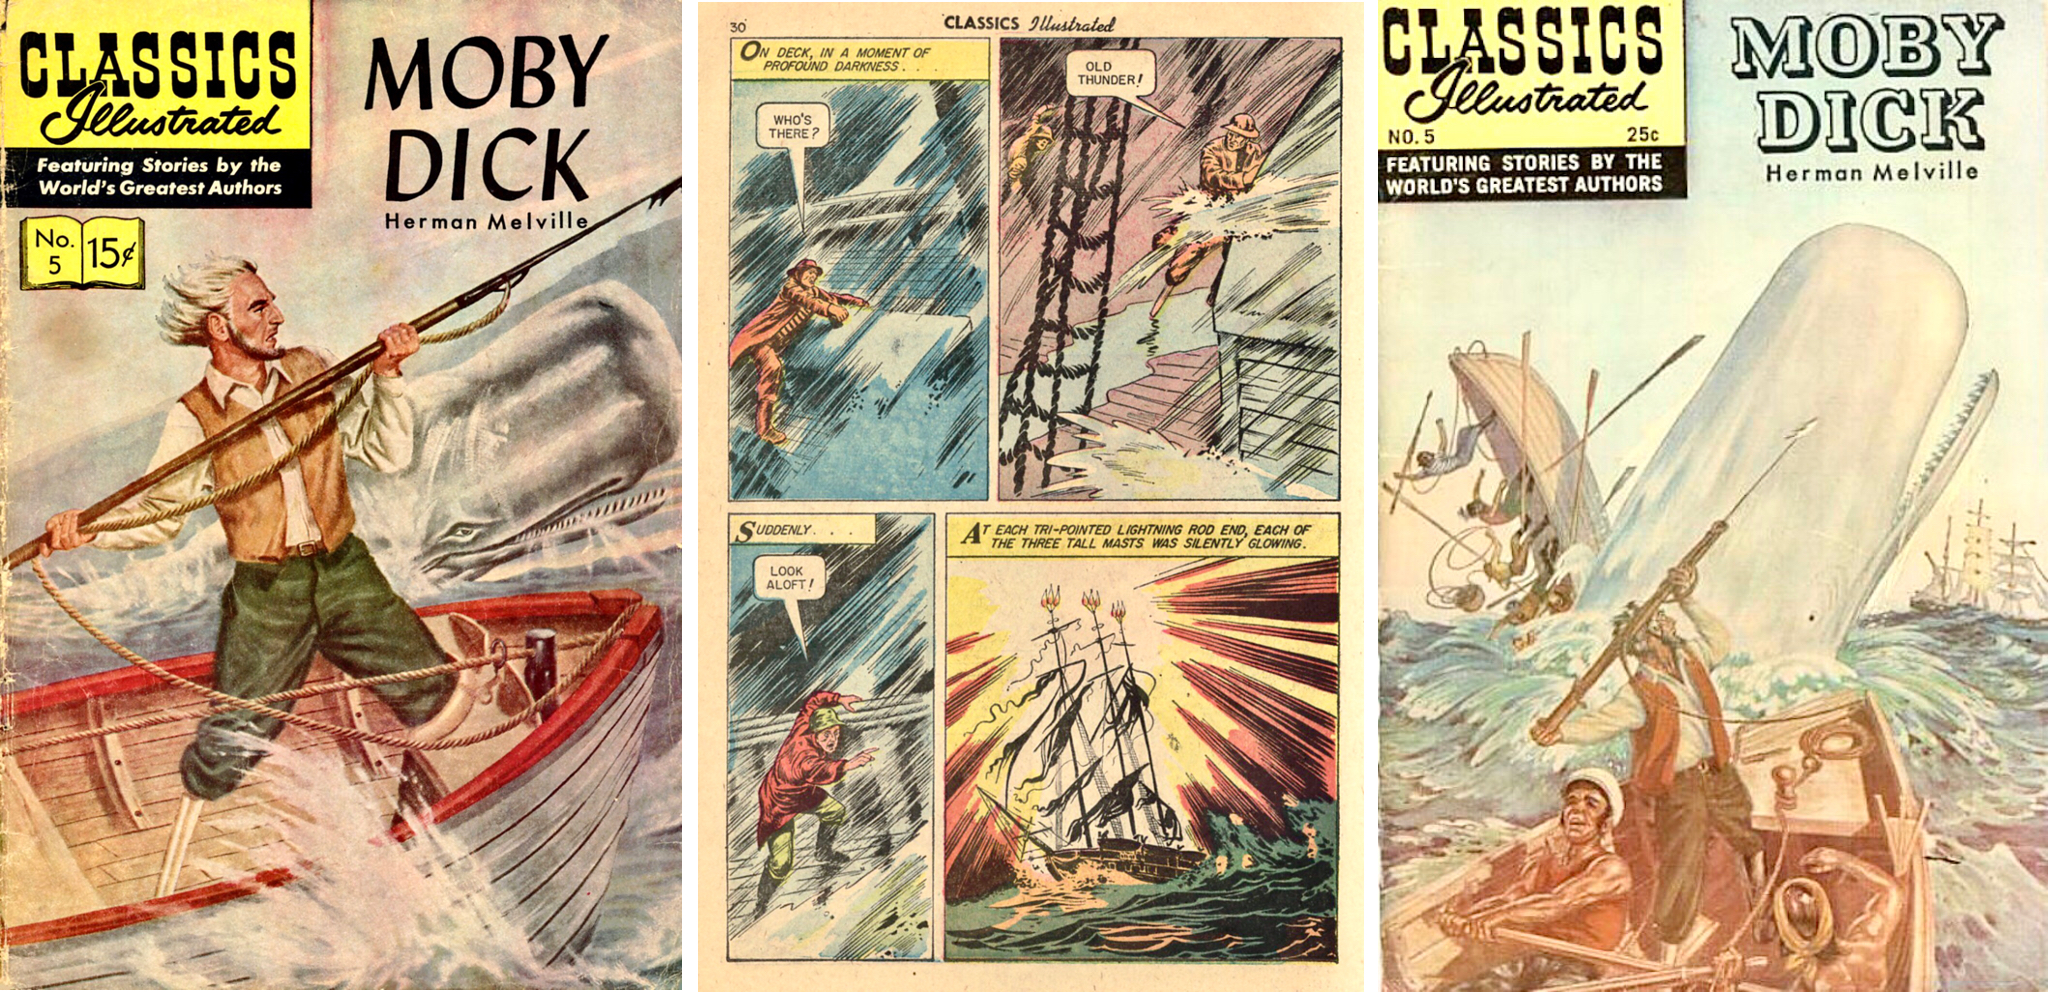 Omslag (1956), en sida ur inlagan, och nytt omslag (1969) till CI #5. ©Gilberton